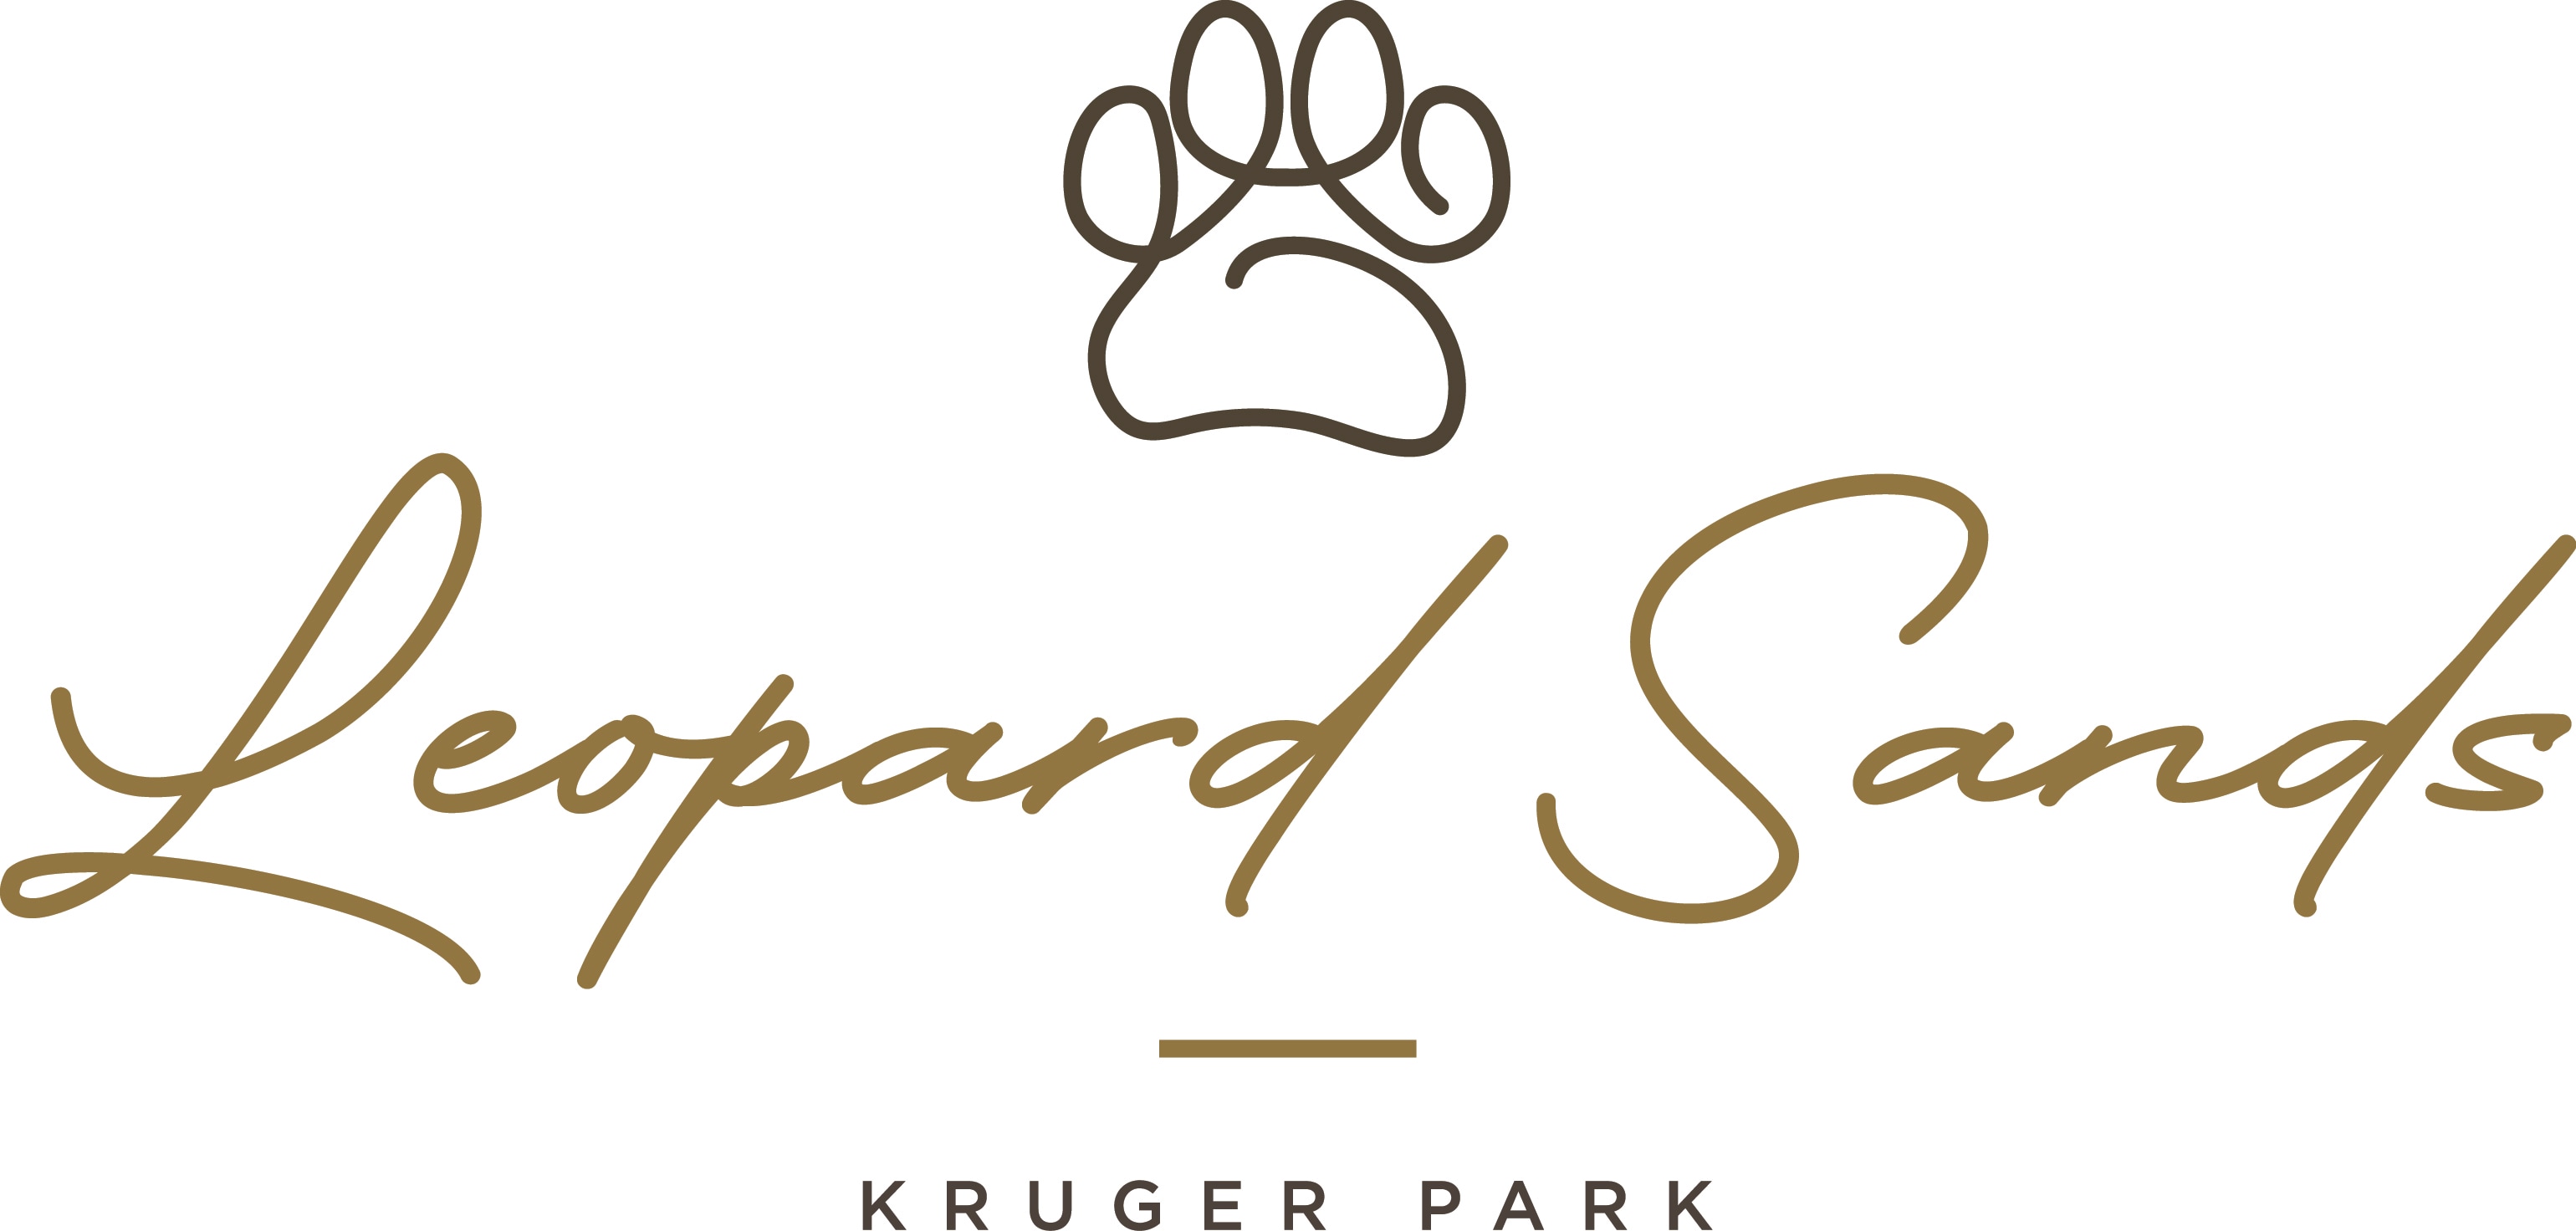 Leopard Sands Kruger Park Logo